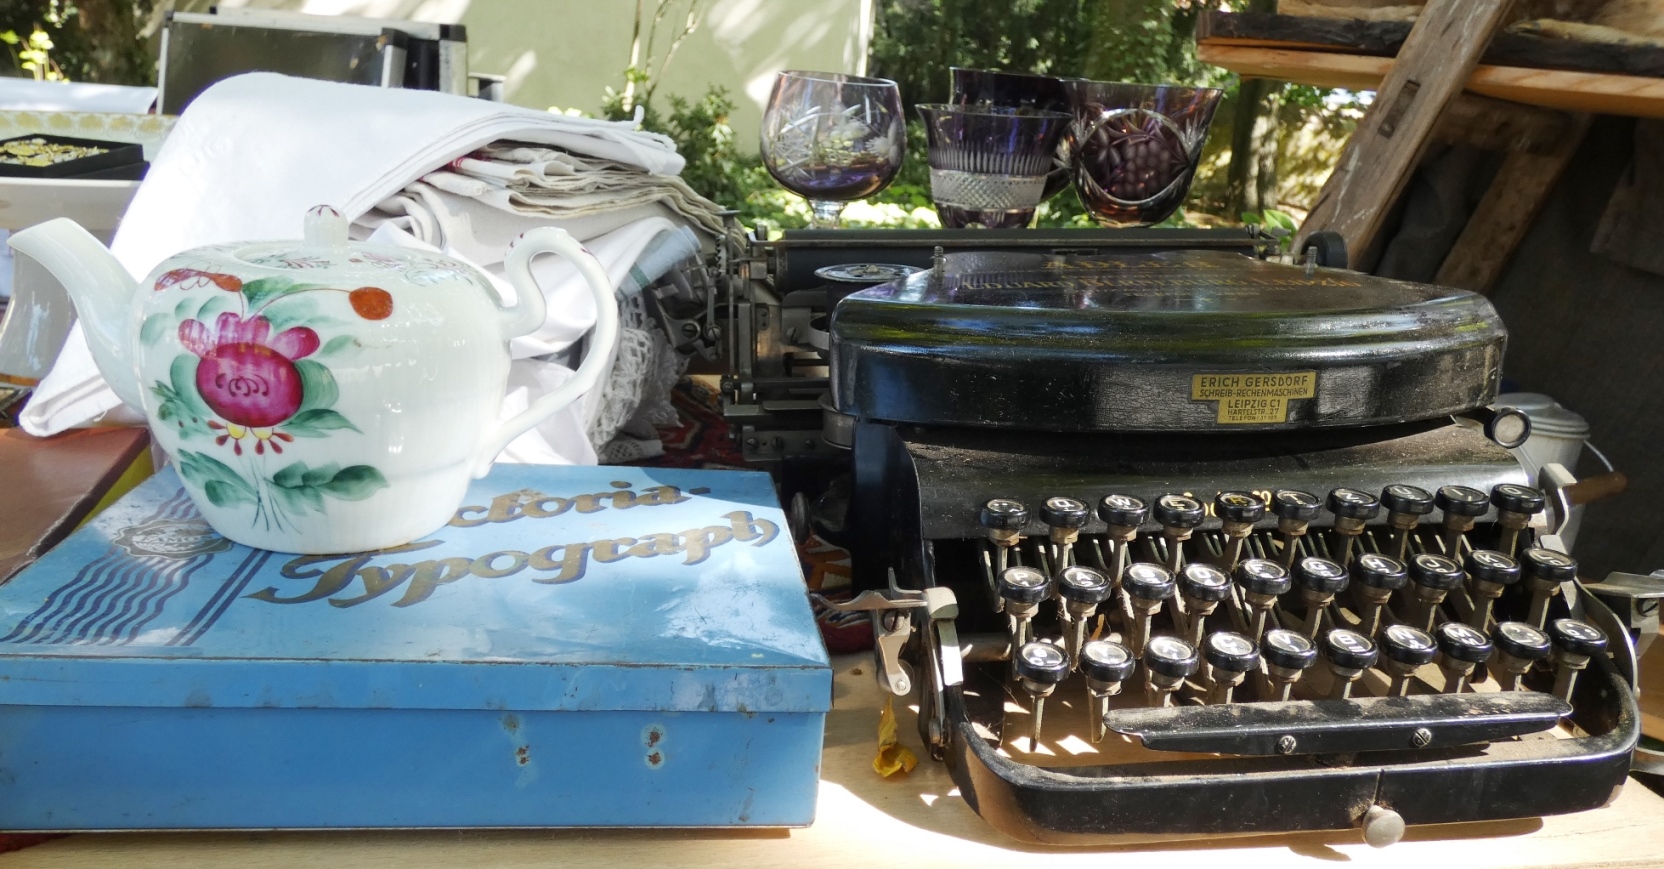 Nahaufnahme eines Flohmarkt-Tisches, auf dem neben einer historischen Schreibmaschine ein mit Blumendekor verziertes Teekännchen, eine hellblauer Blechdose, ein kleiner Stapel weißer Tischdecken sowie einige geschliffene Weingläser stehen